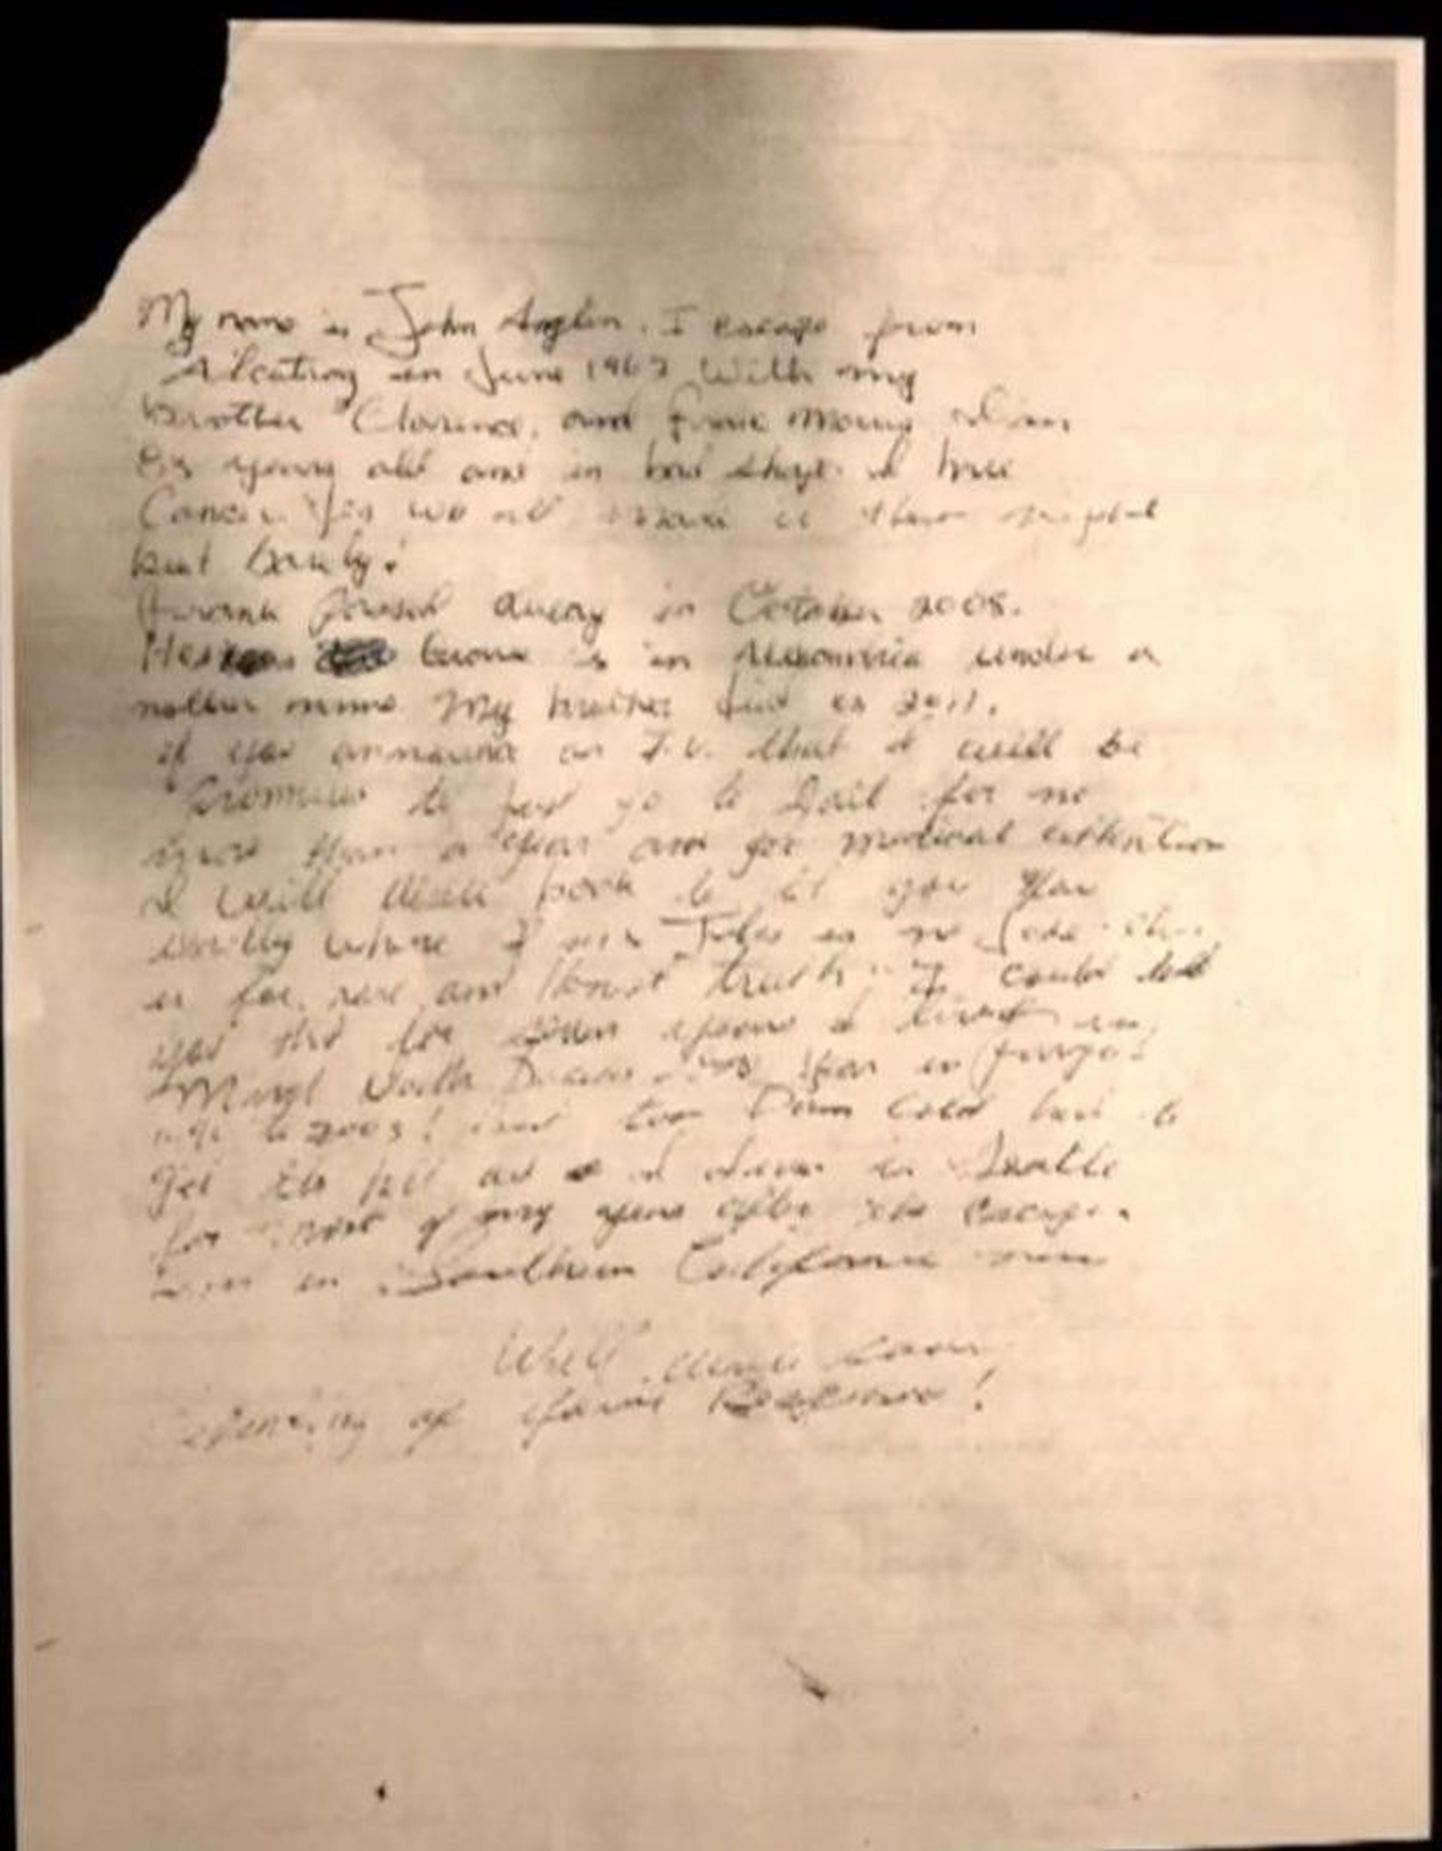 Kiri, mille väidetavalt kirjutas 1962. aastal Alcatrazi vanglast põgenenud John Anglin